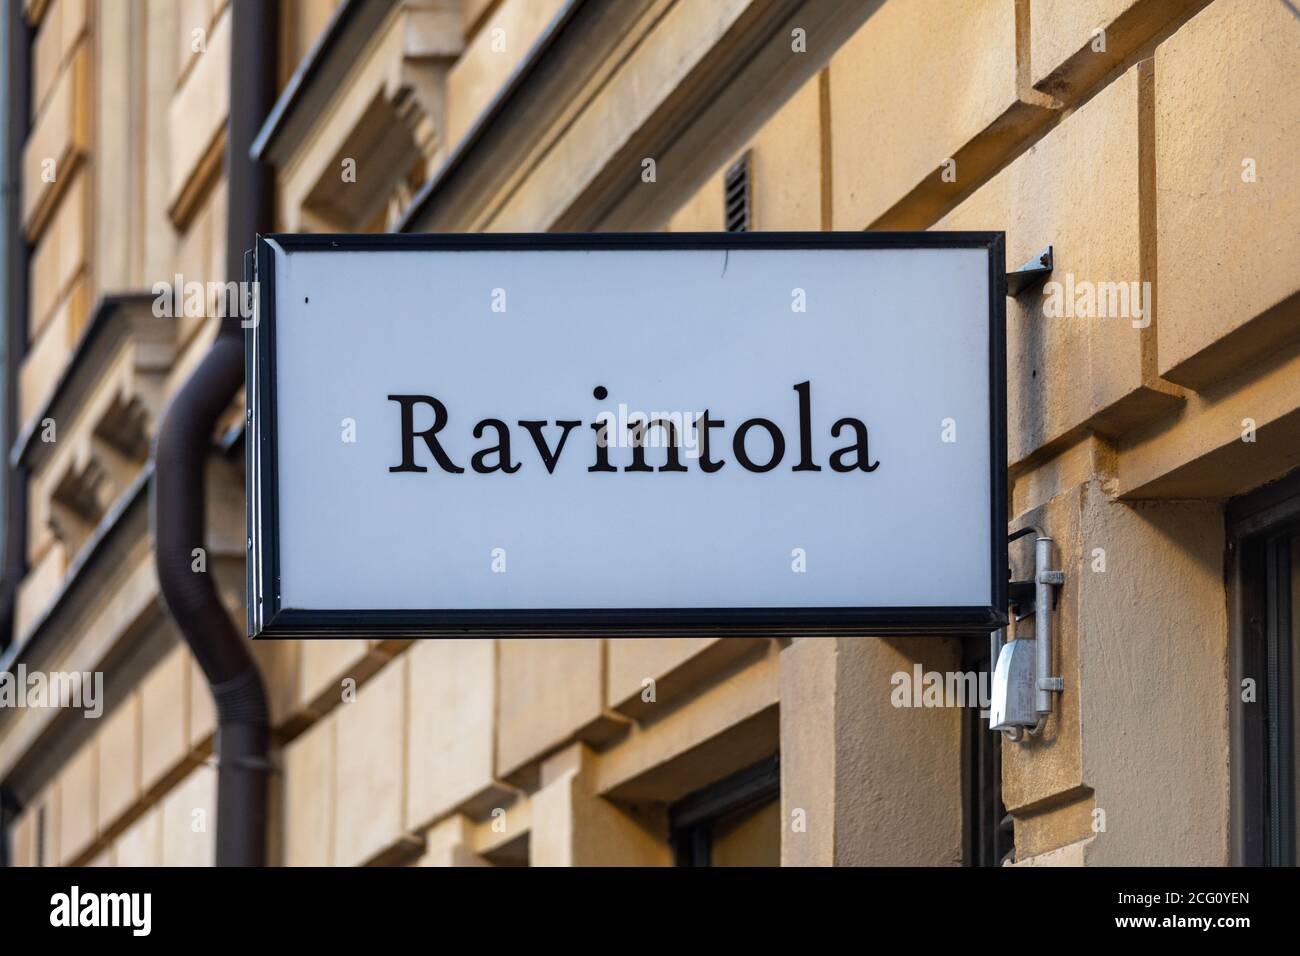 Ravintola. Restaurant sign in Kruununhaka district of Helsinki, Finland. Stock Photo